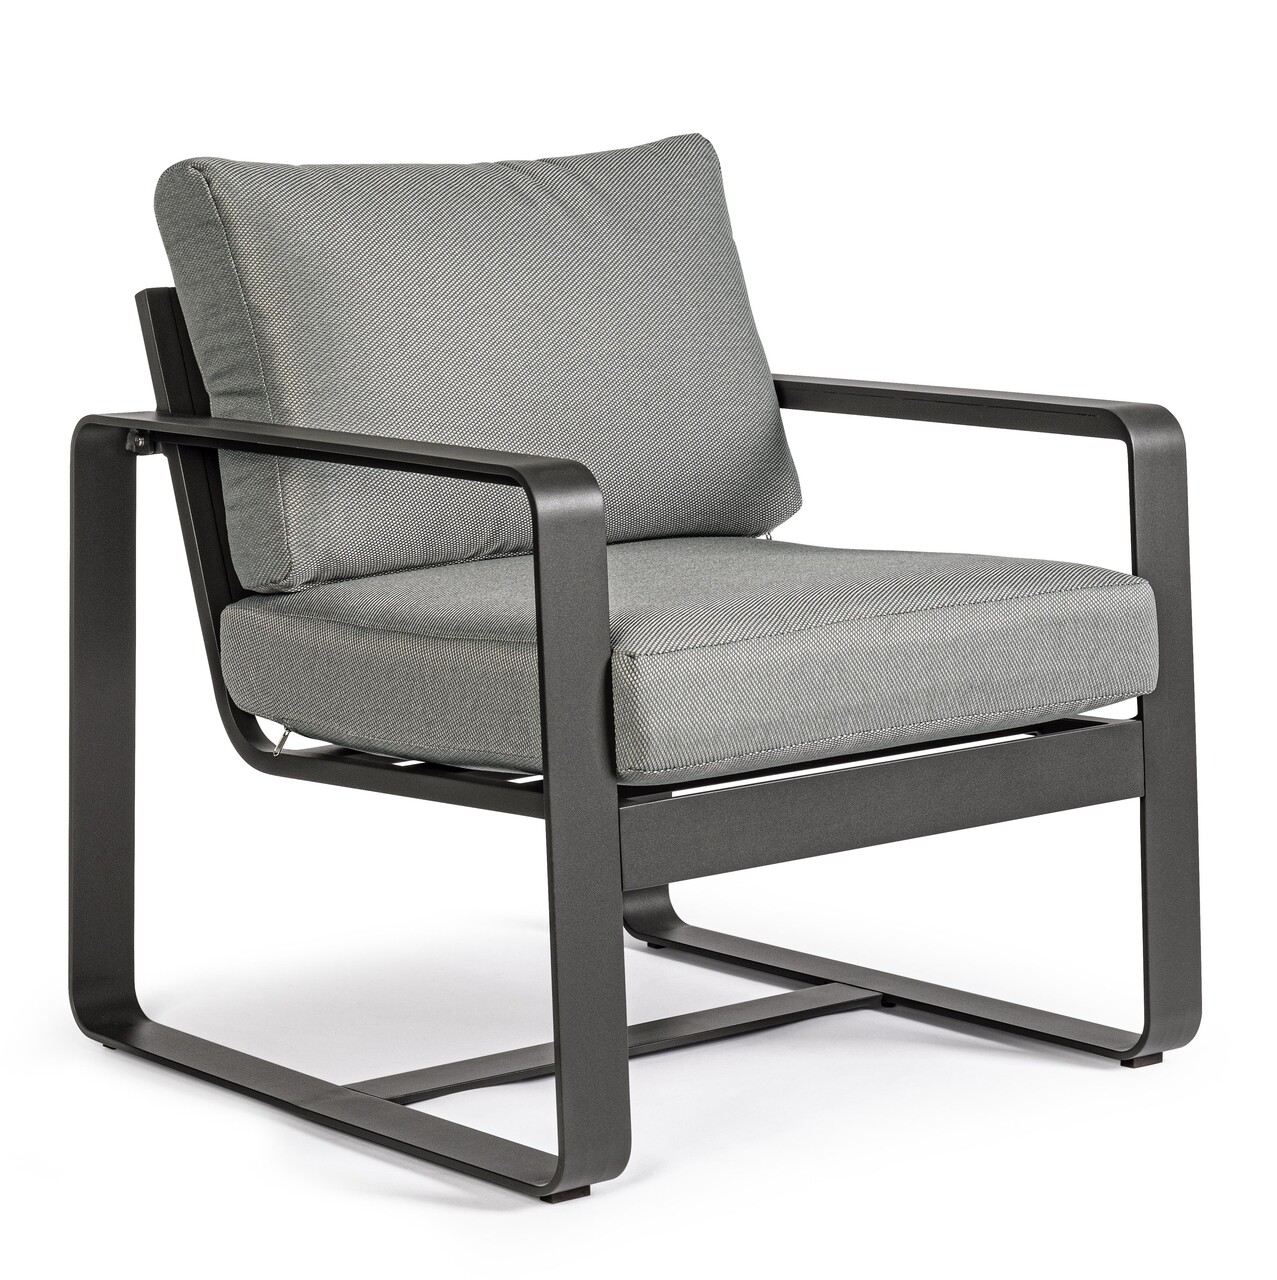 Merrigan Kerti/terasz fotel, Bizzotto, 74 x 78 x 84 cm, alumínium/ofelin szövet, szénszín